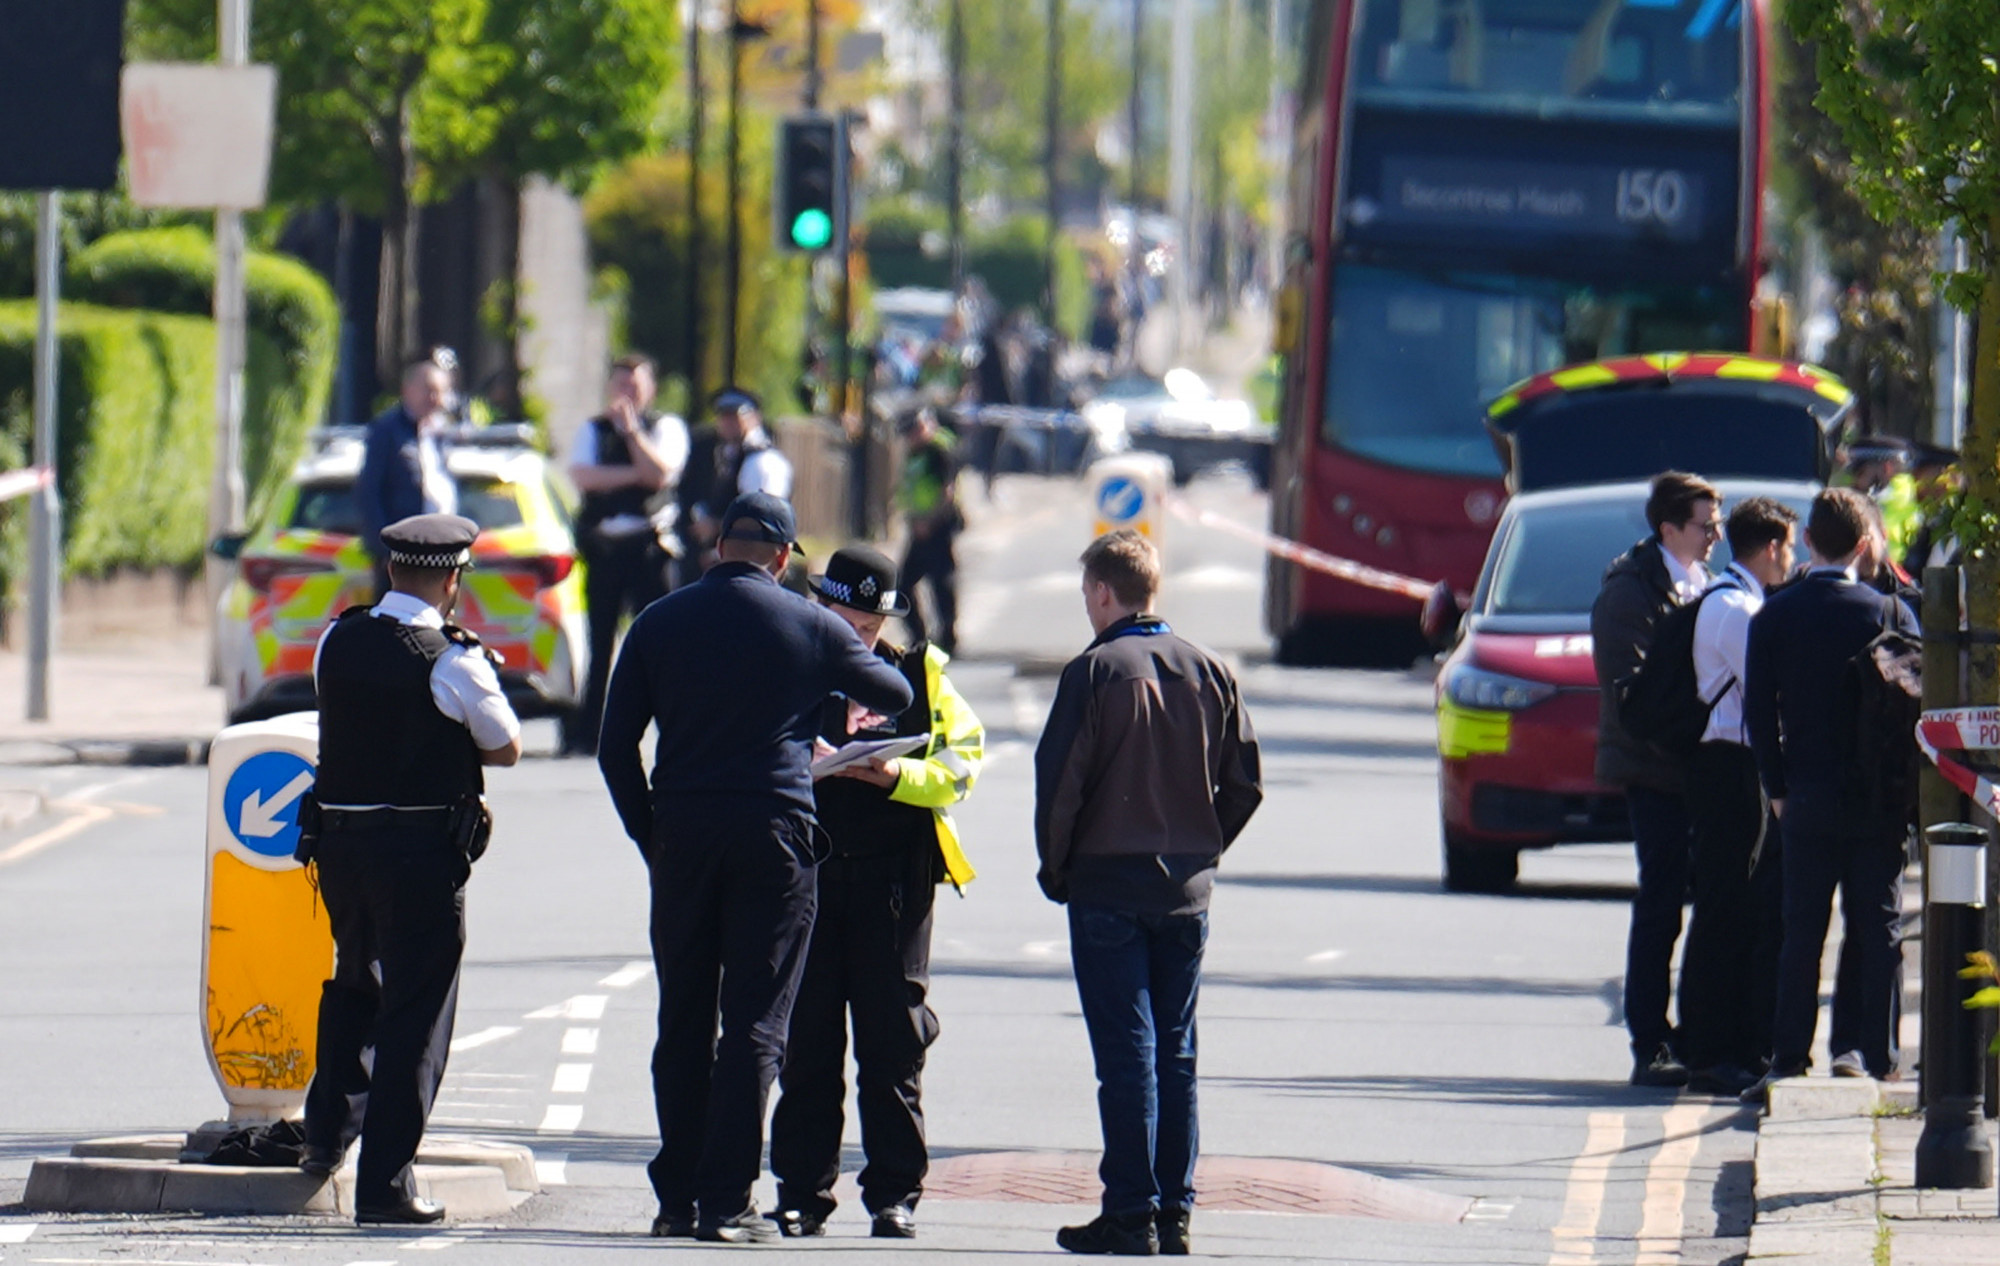 Karddal támadt emberekre egy férfi Londonban, egy tizenhárom éves fiú meghalt